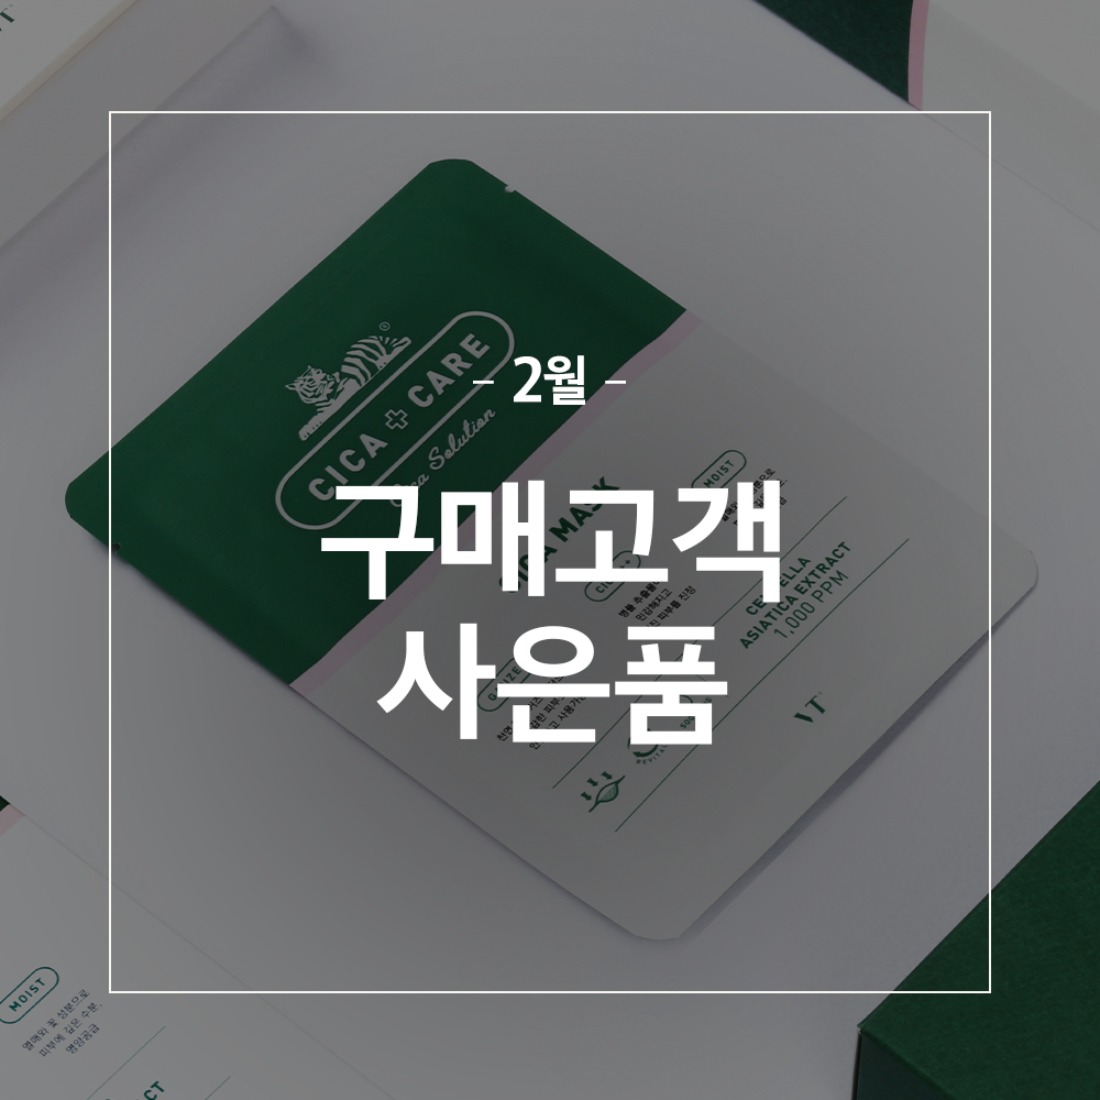 브이티코스메틱,화장품,브이티코스메틱,23년 2월 구매금액별 사은품,자체브랜드